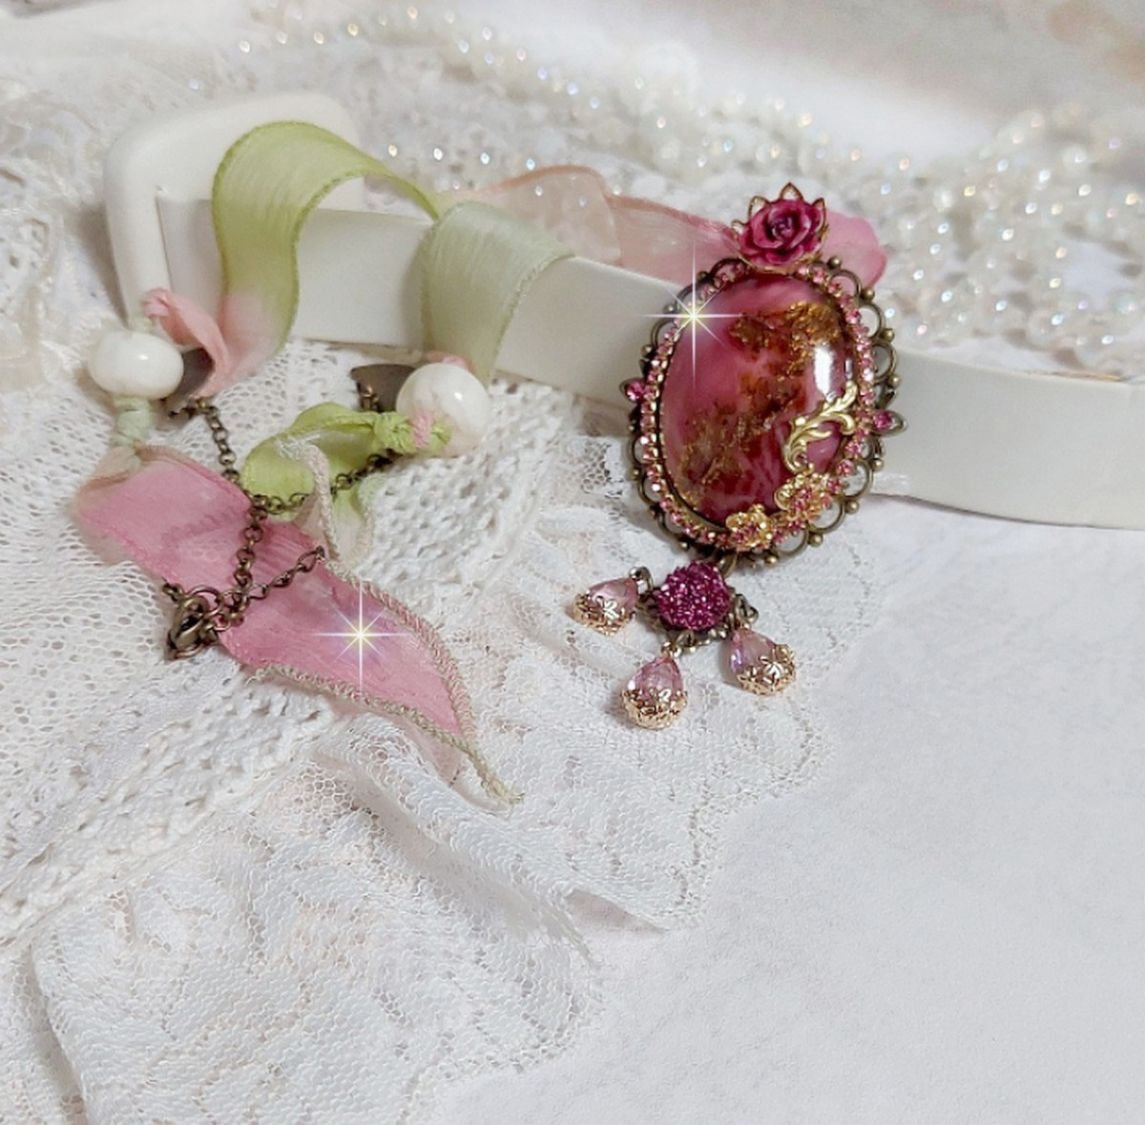 Pendentif Pampelone Fuchsia Haute Couture avec un cabochon artisanal et feuilles d’or, orné de strass, cristaux Roses, rose en résine, breloques, entretoises dentelles, Murano et ruban de soie